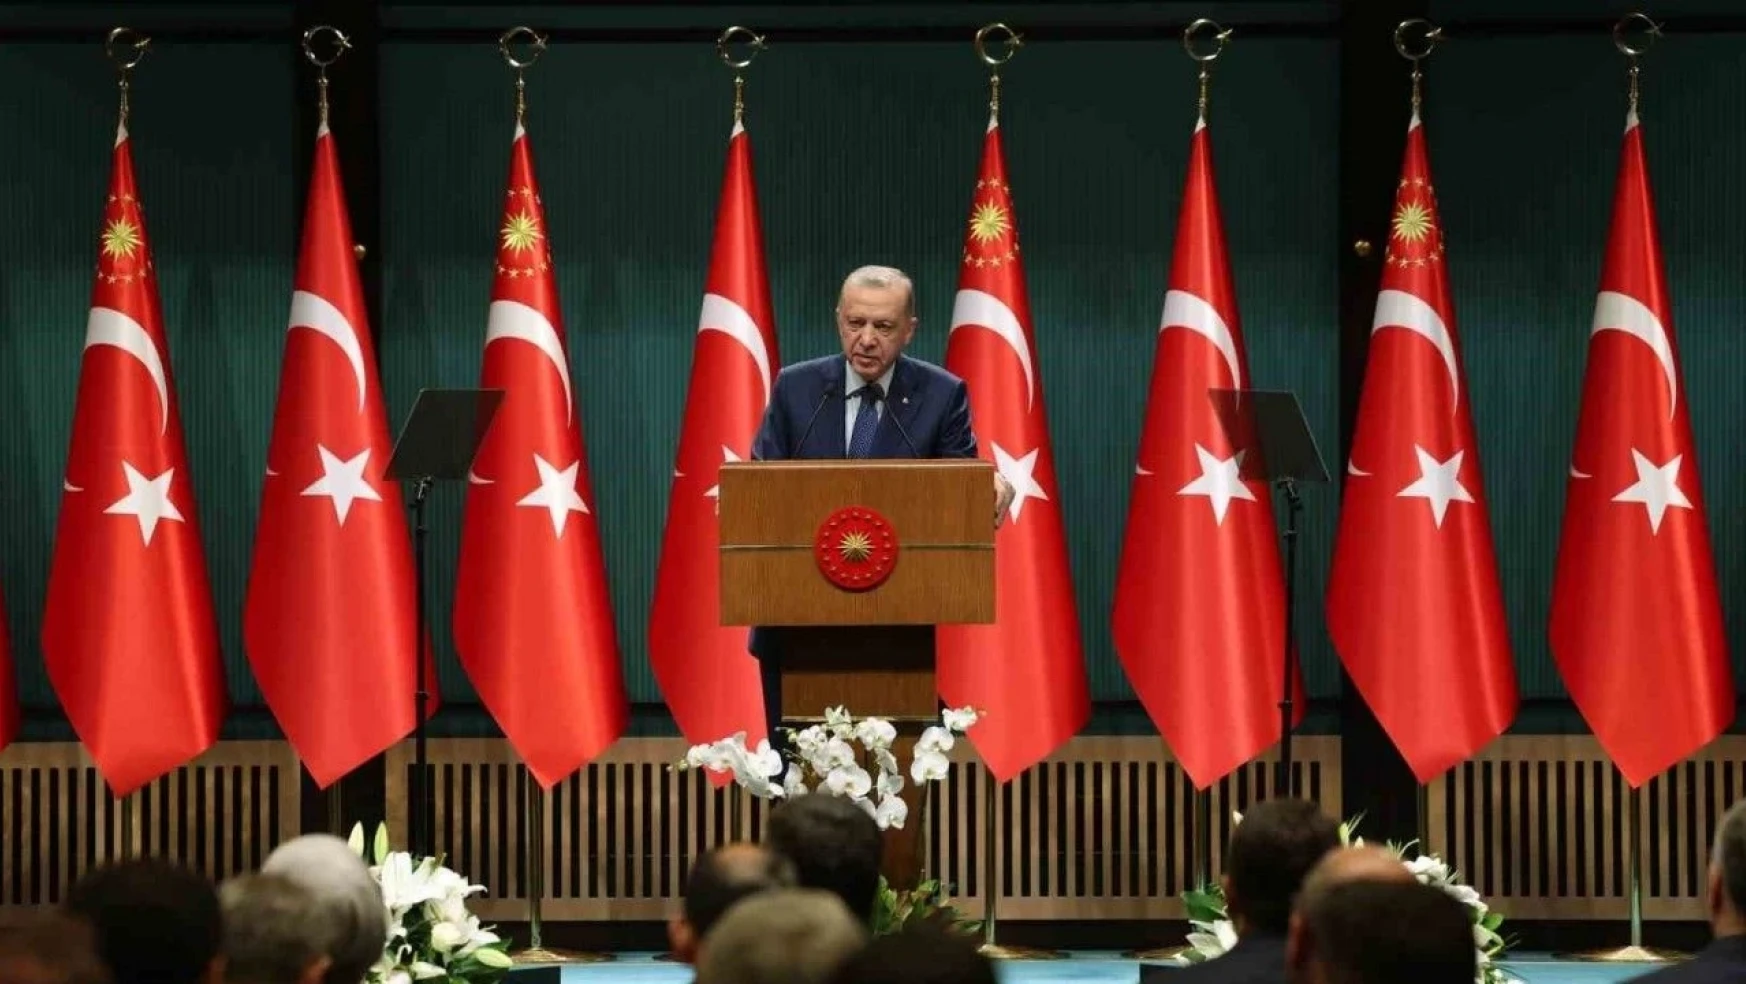 Cumhurbaşkanı Erdoğan: (Öğretmen atamaları) Milli Eğitim Bakanlığımız yarın atamaya esas branş dağılımlarını, başvuru takvimini ve süreci paylaşacaktır